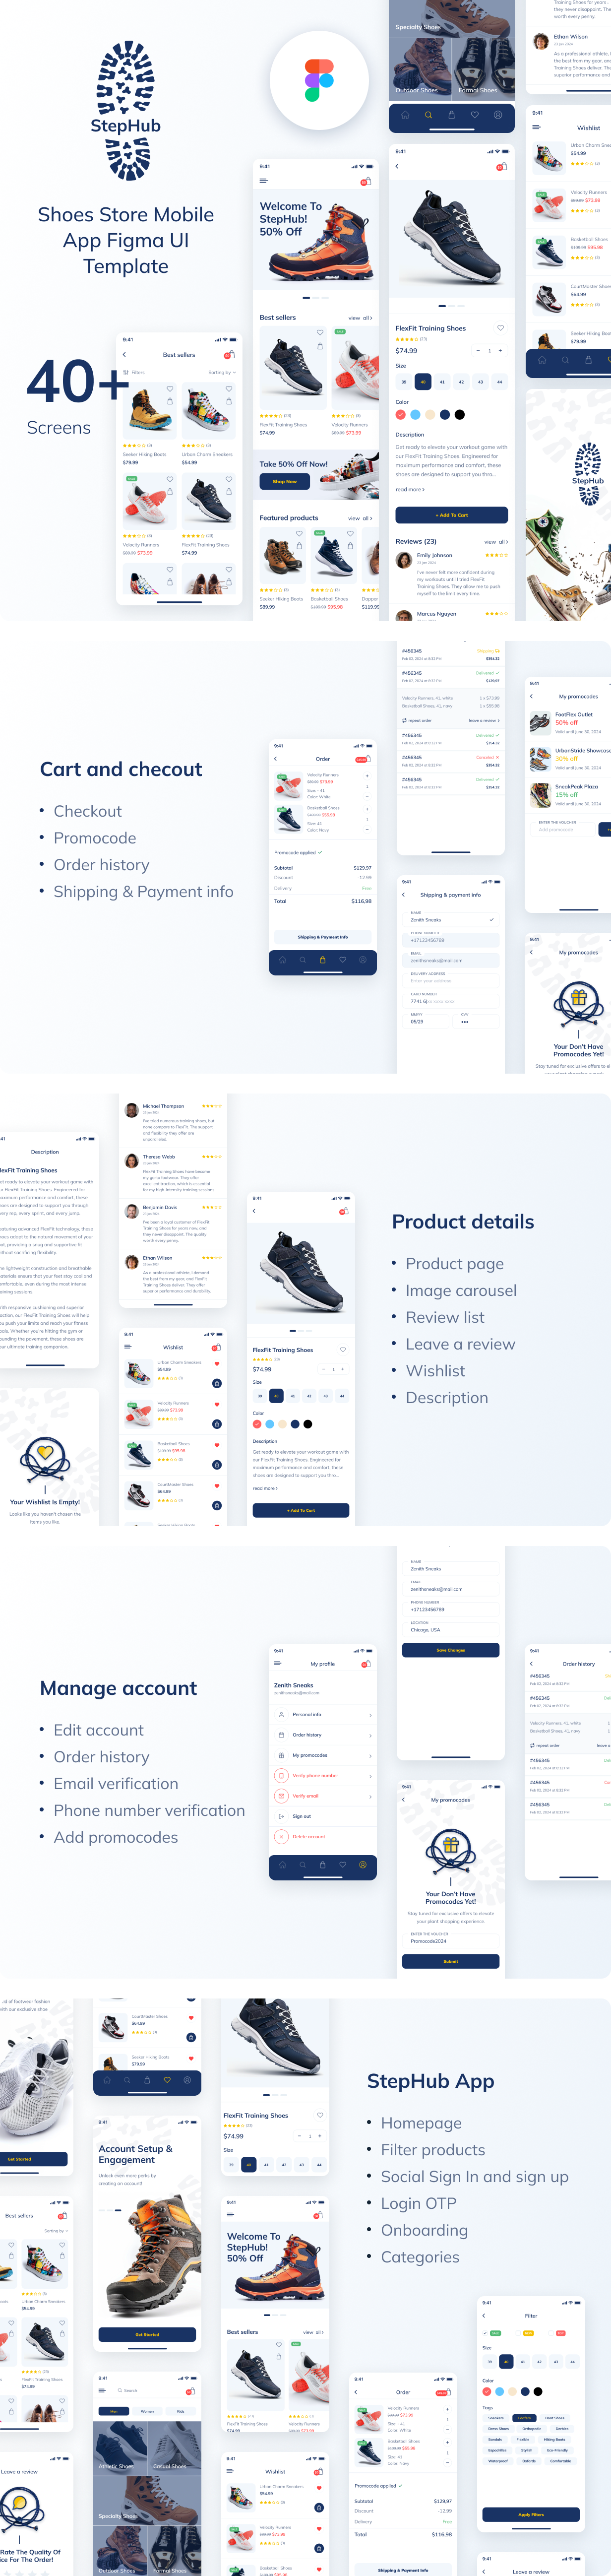 StepHub - Shoes Store Mobile App Figma UI Template - 1